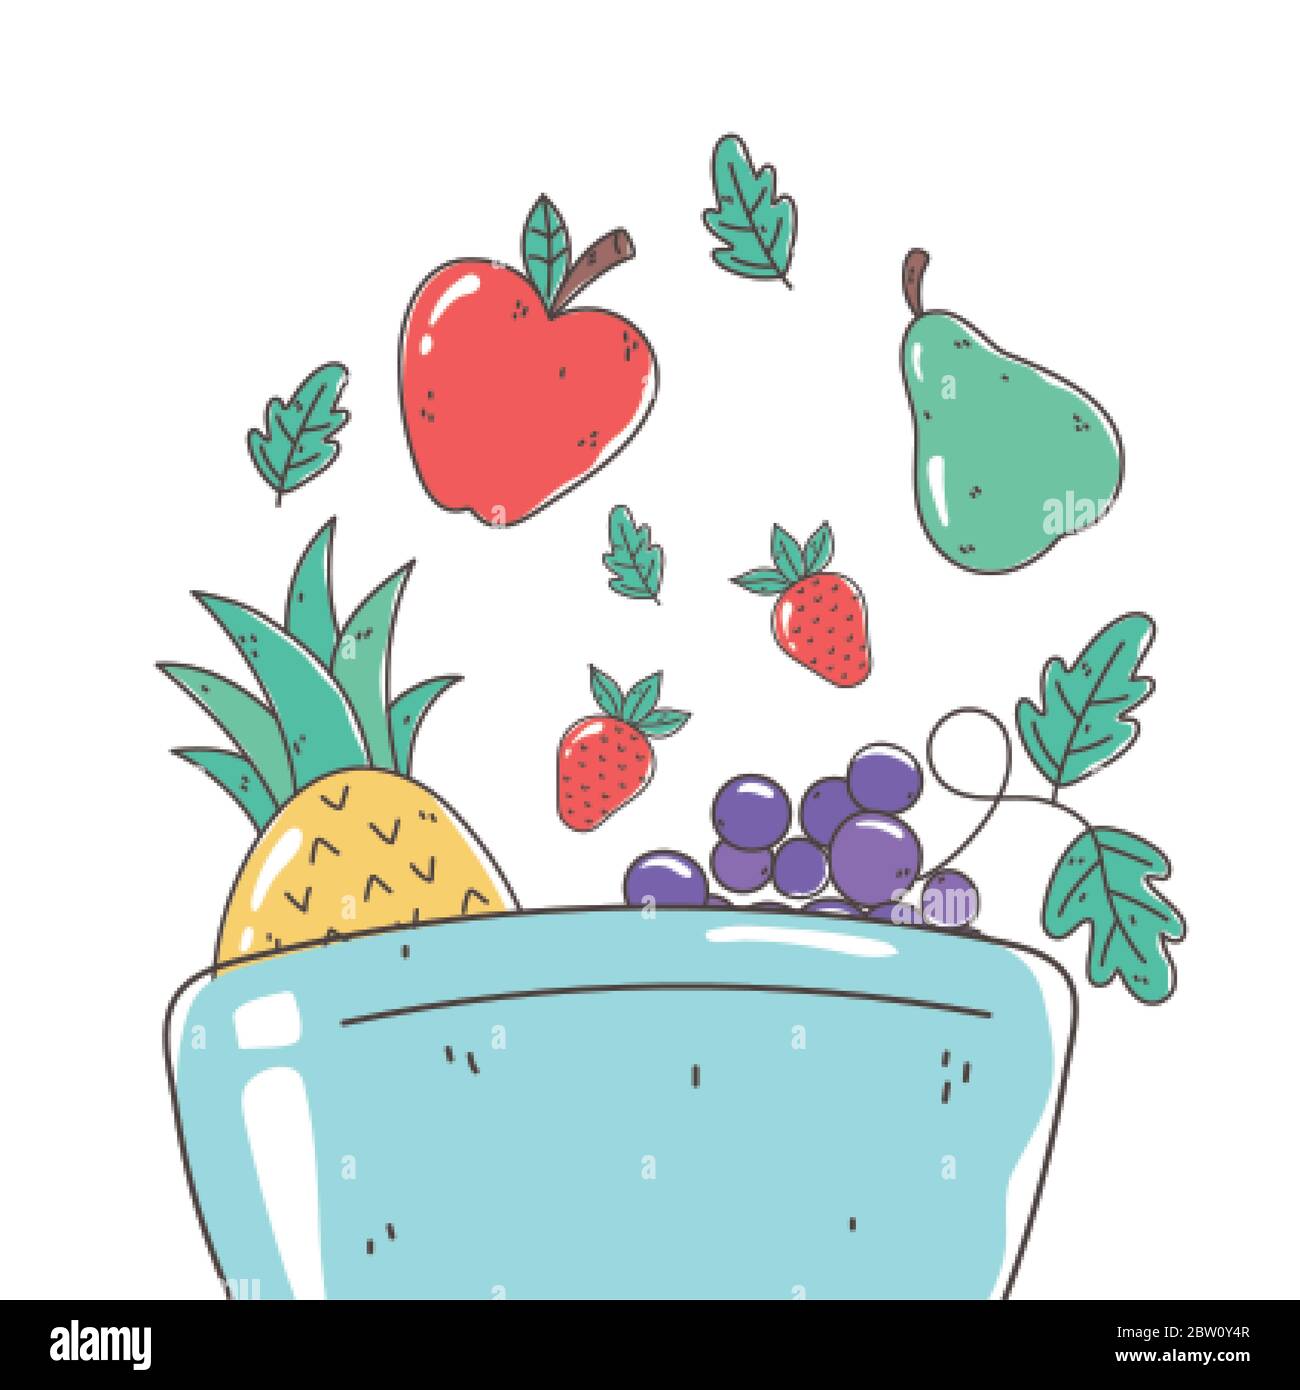 Gesunde Ernährung Ernährung Ernährung Bio Apfel Birne Trauben Ananas Schüssel Vektor-Illustration Stock Vektor